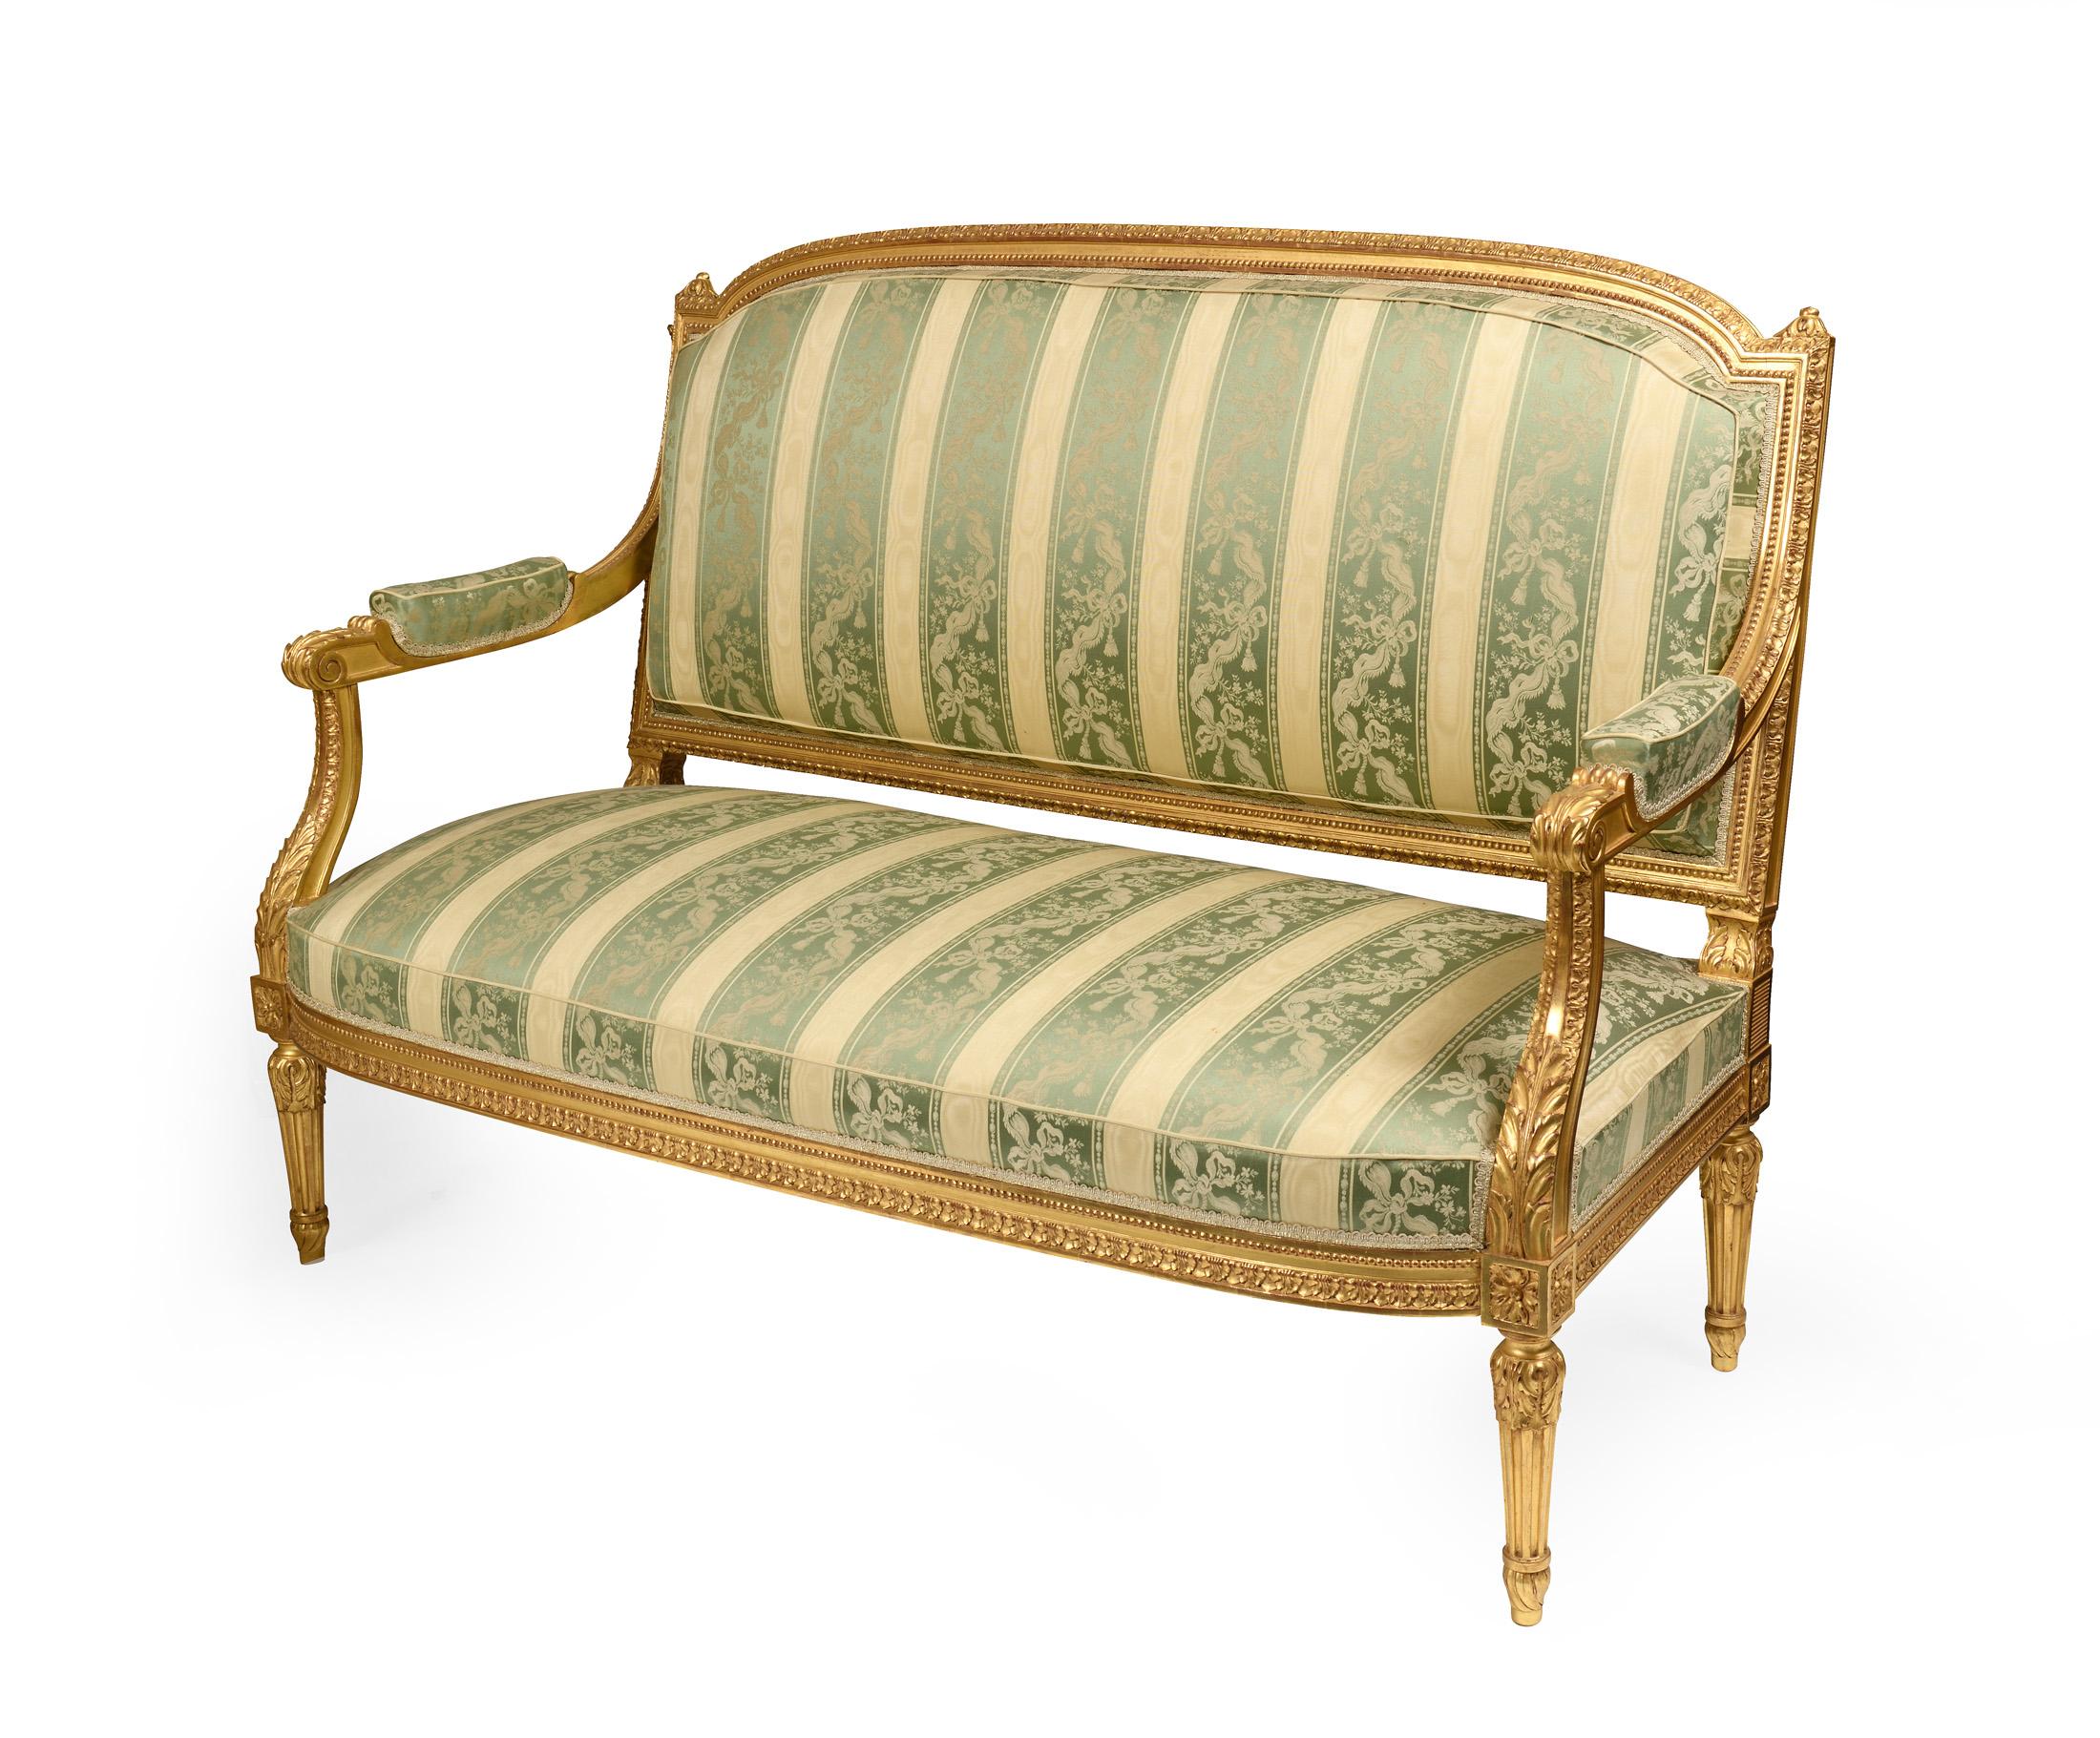 C'est le très haut de gamme pour un ensemble de salon comprenant un canapé et 4 fauteuils dans le style de Louis XVI ,Cet ensemble de salon a été tapissé exactement de la même manière que ce qu'ils ont fait dans le château de Versailles à cette